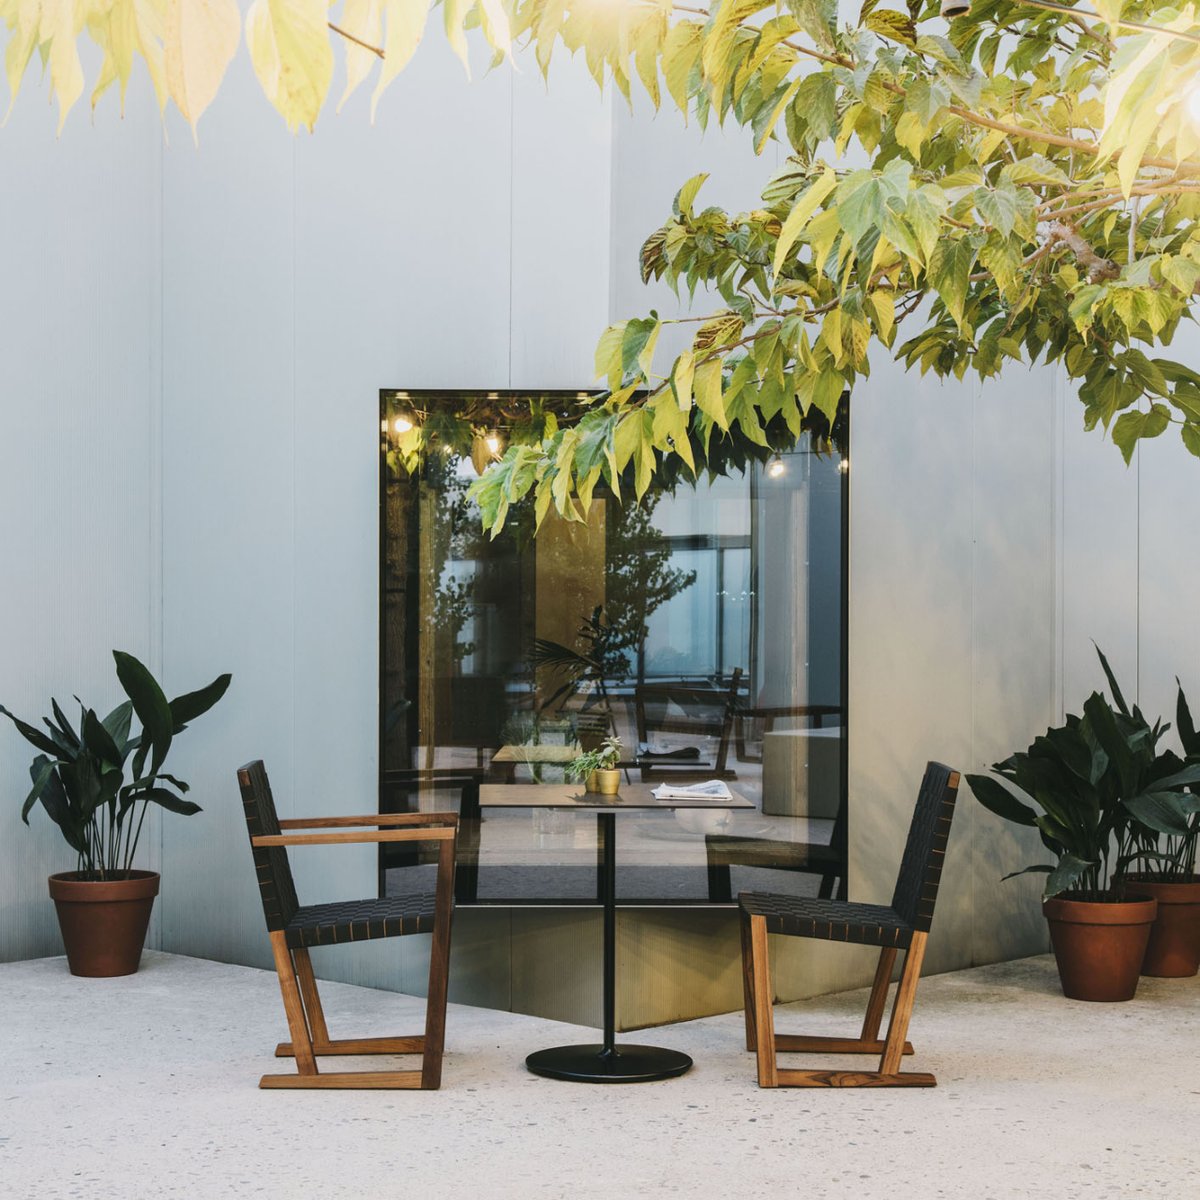 Diseño para un estilo de vida sano y sostenible. 🌿

Si tu placer es vivir al aire libre, descubre las colecciones outdoor de @AndreuWorld. 
Aprovecha el 𝟭𝟱% 𝗱𝗲 𝗱𝗲𝘀𝗰𝘂𝗲𝗻𝘁𝗼 hasta el 15 de junio en 𝗔𝘁𝗿𝗲𝘇𝘇𝗼 𝗜𝗻𝘁𝗲𝗿𝗶𝗼𝗿𝗶𝘀𝗺𝗲. 💯

🔗 bit.ly/mueble-exterio…